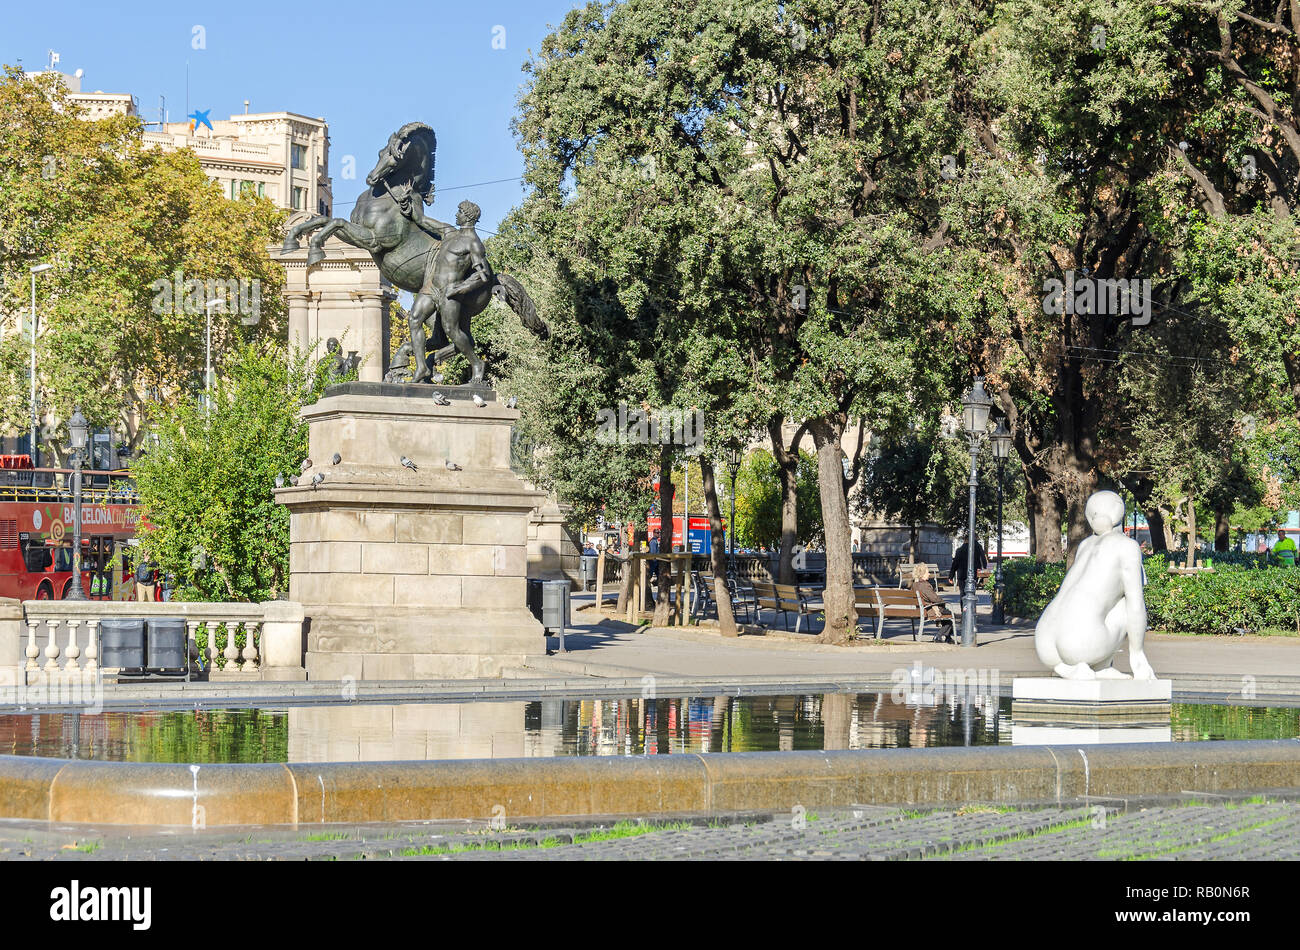 Barcellona, Spagna - 10 Novembre 2018: Placa de Catalunya (Piazza Catalonia) con un neoclassico statua equestre, Josep Llimona la scultura Foto Stock